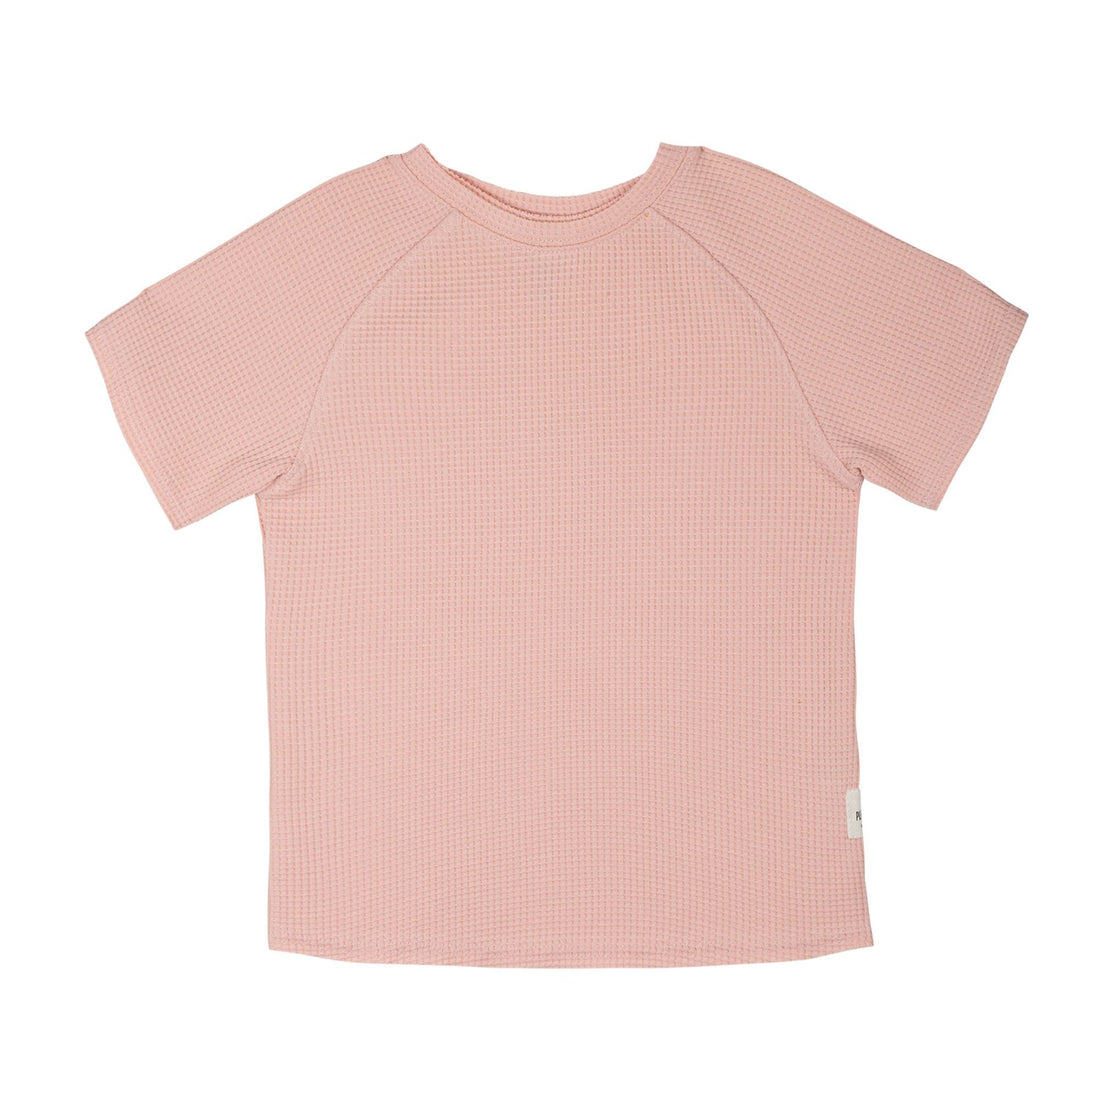 Sommer T-Shirt aus Baumwolle mit Waffle-Muster in rosa von Pure Pure für Mädchen und Jungen.